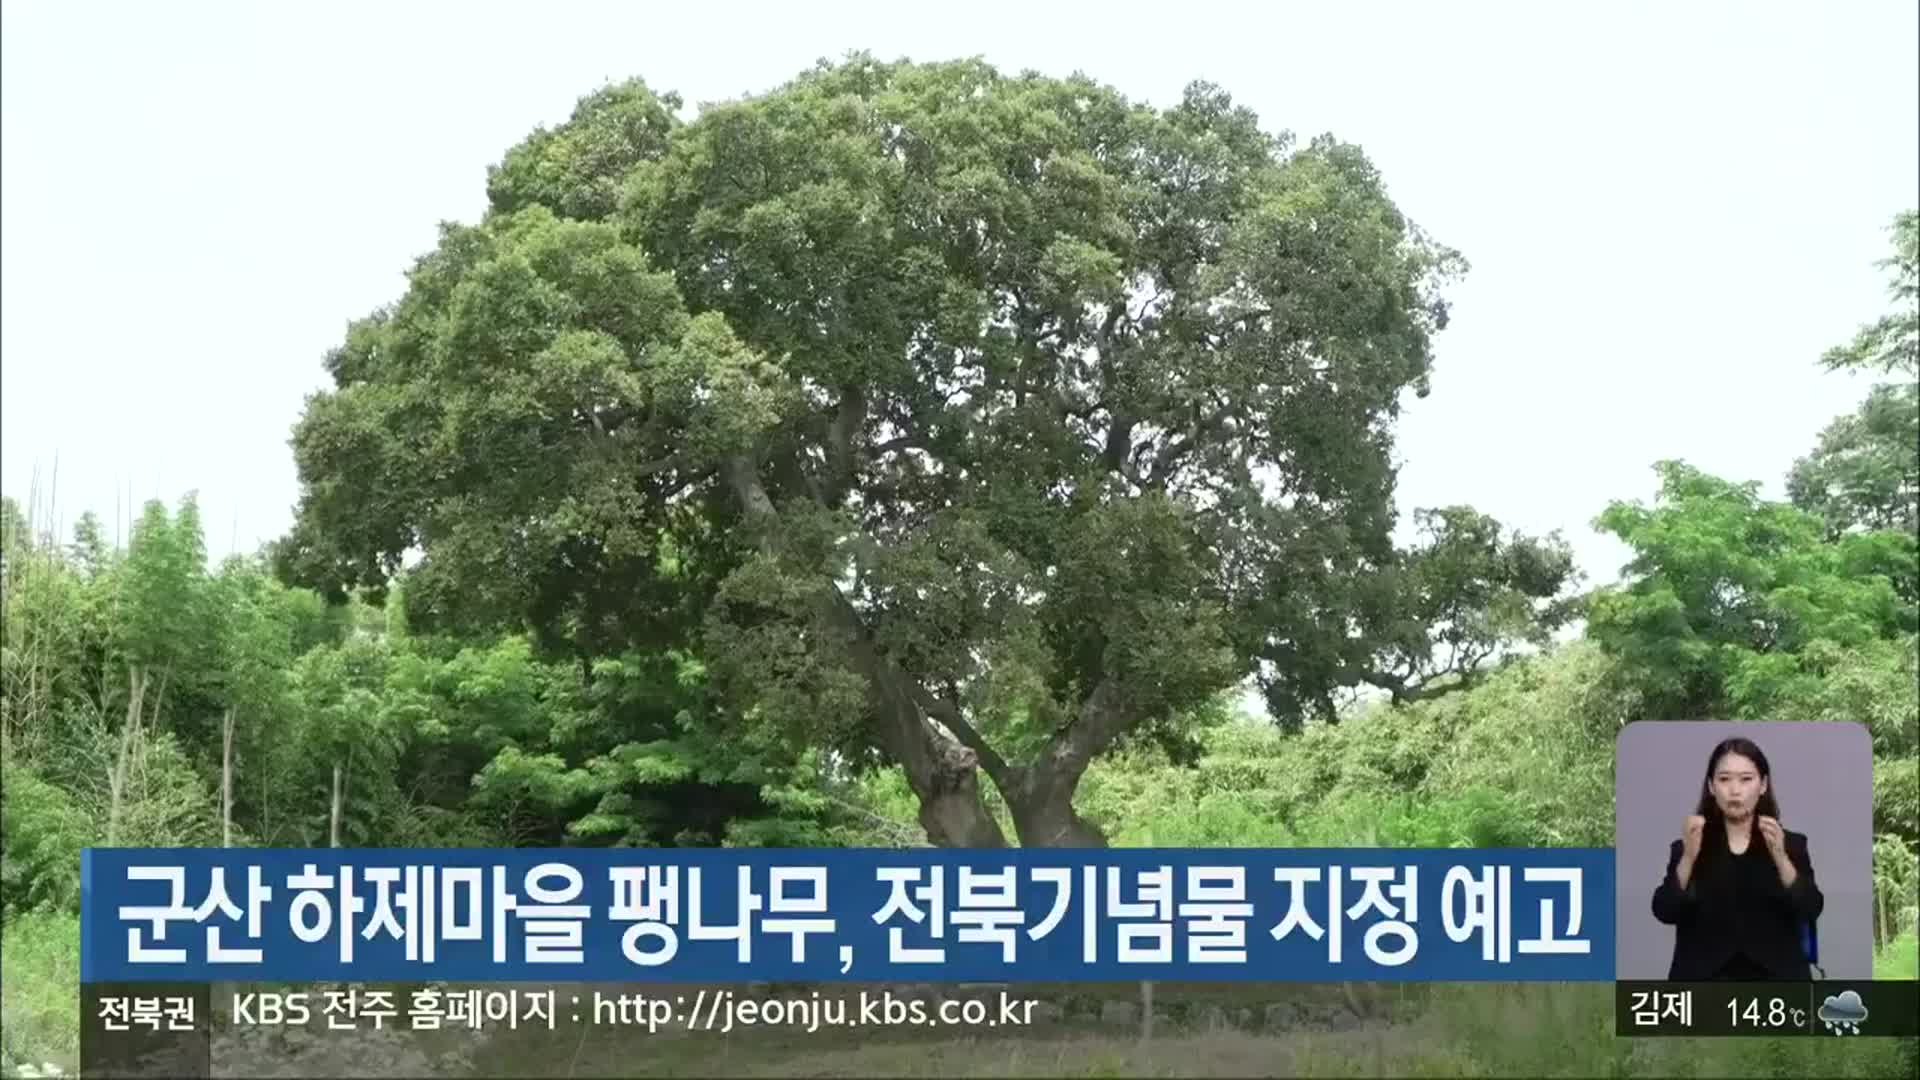 군산 하제마을 팽나무, 전북기념물 지정 예고